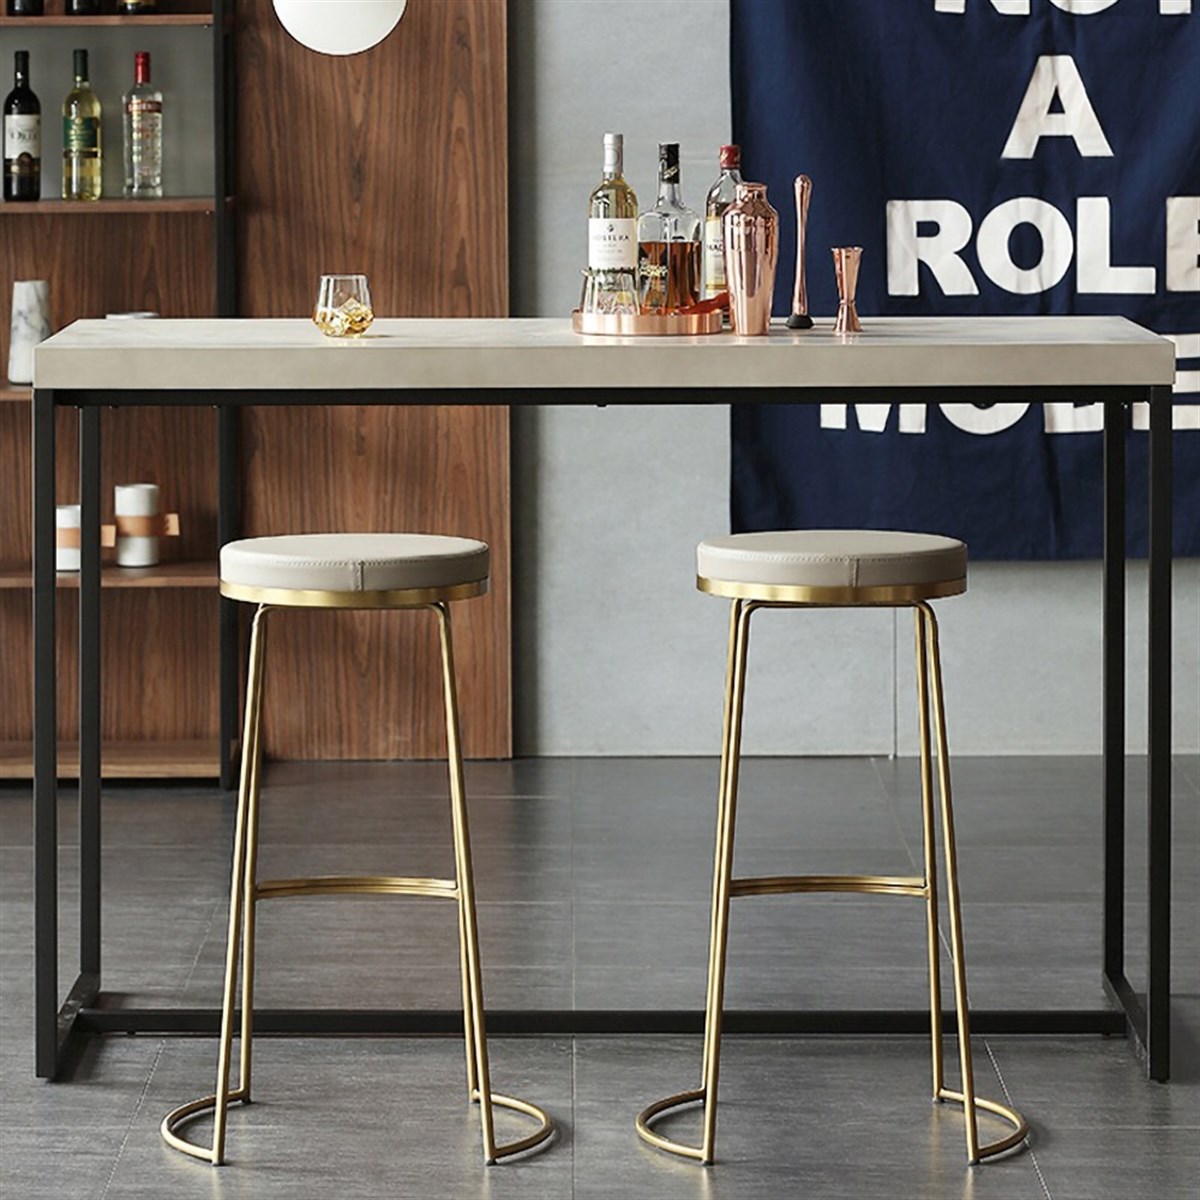 Püff Modern Tasarım Bar Sandalyesi | Püff Konsept